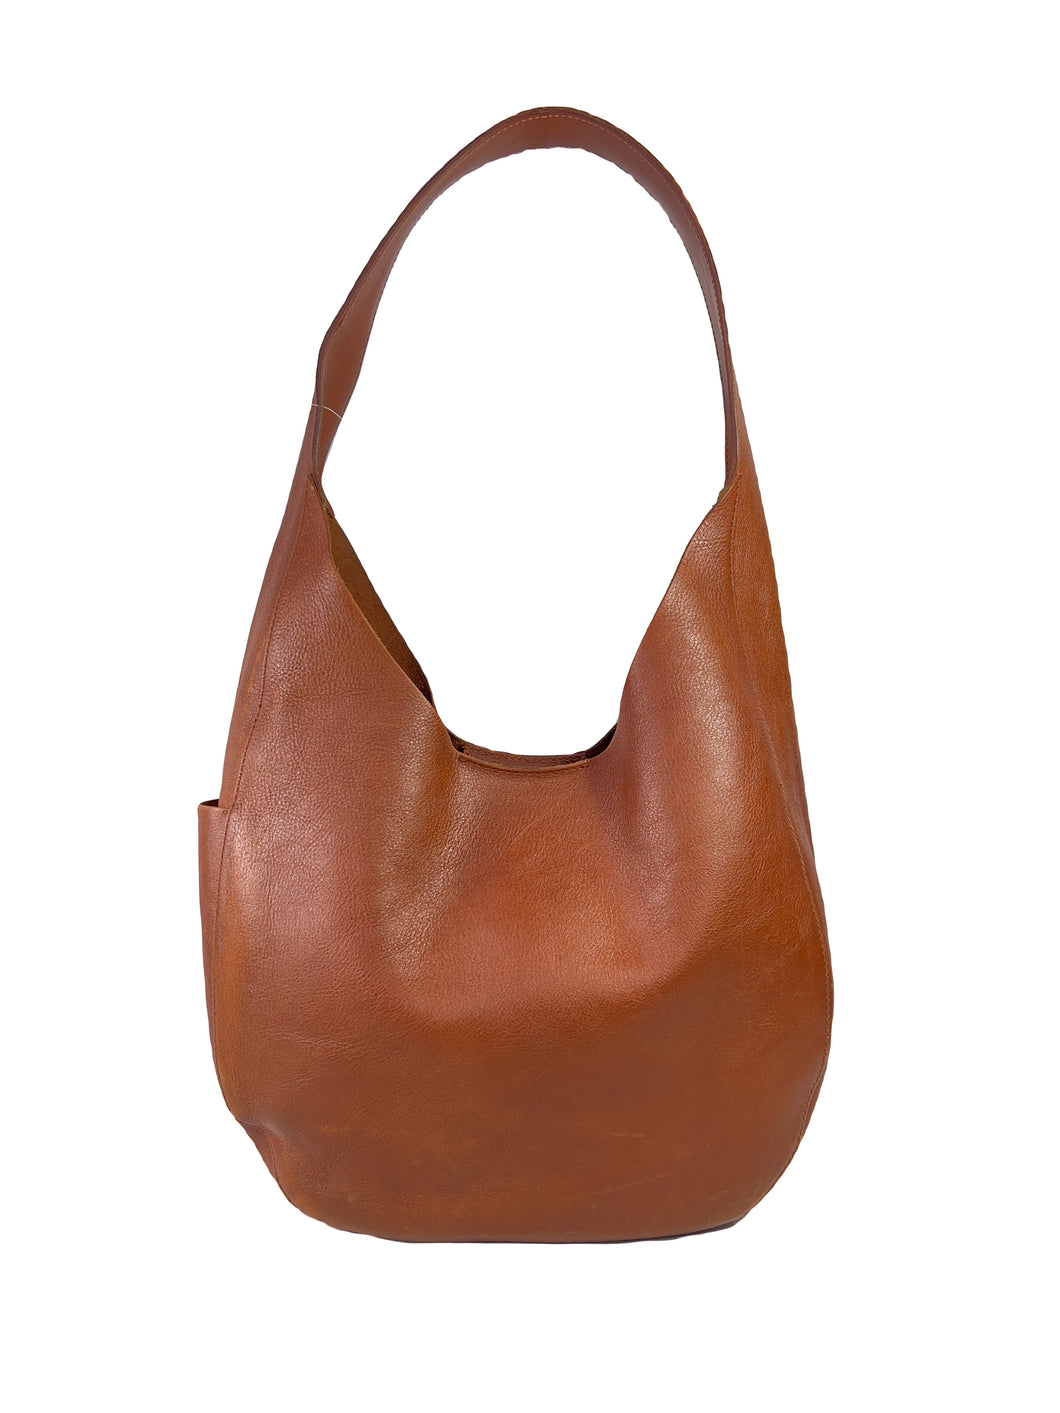 Madewell dark brown leather shoulder bag